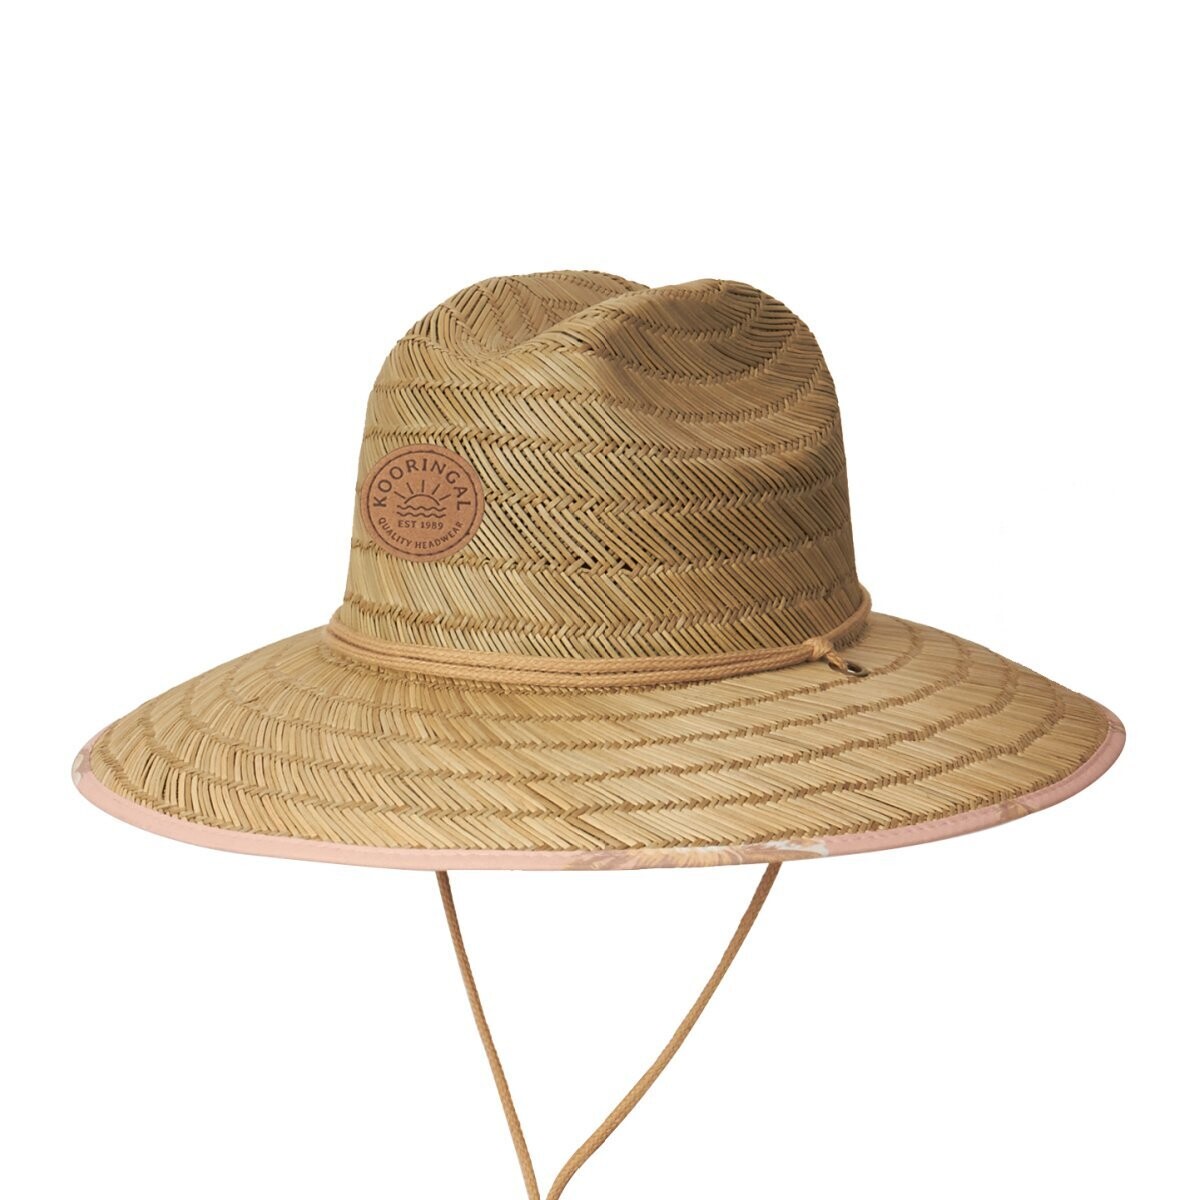 Kooringal Women's Ponie Surf Straw Hat 